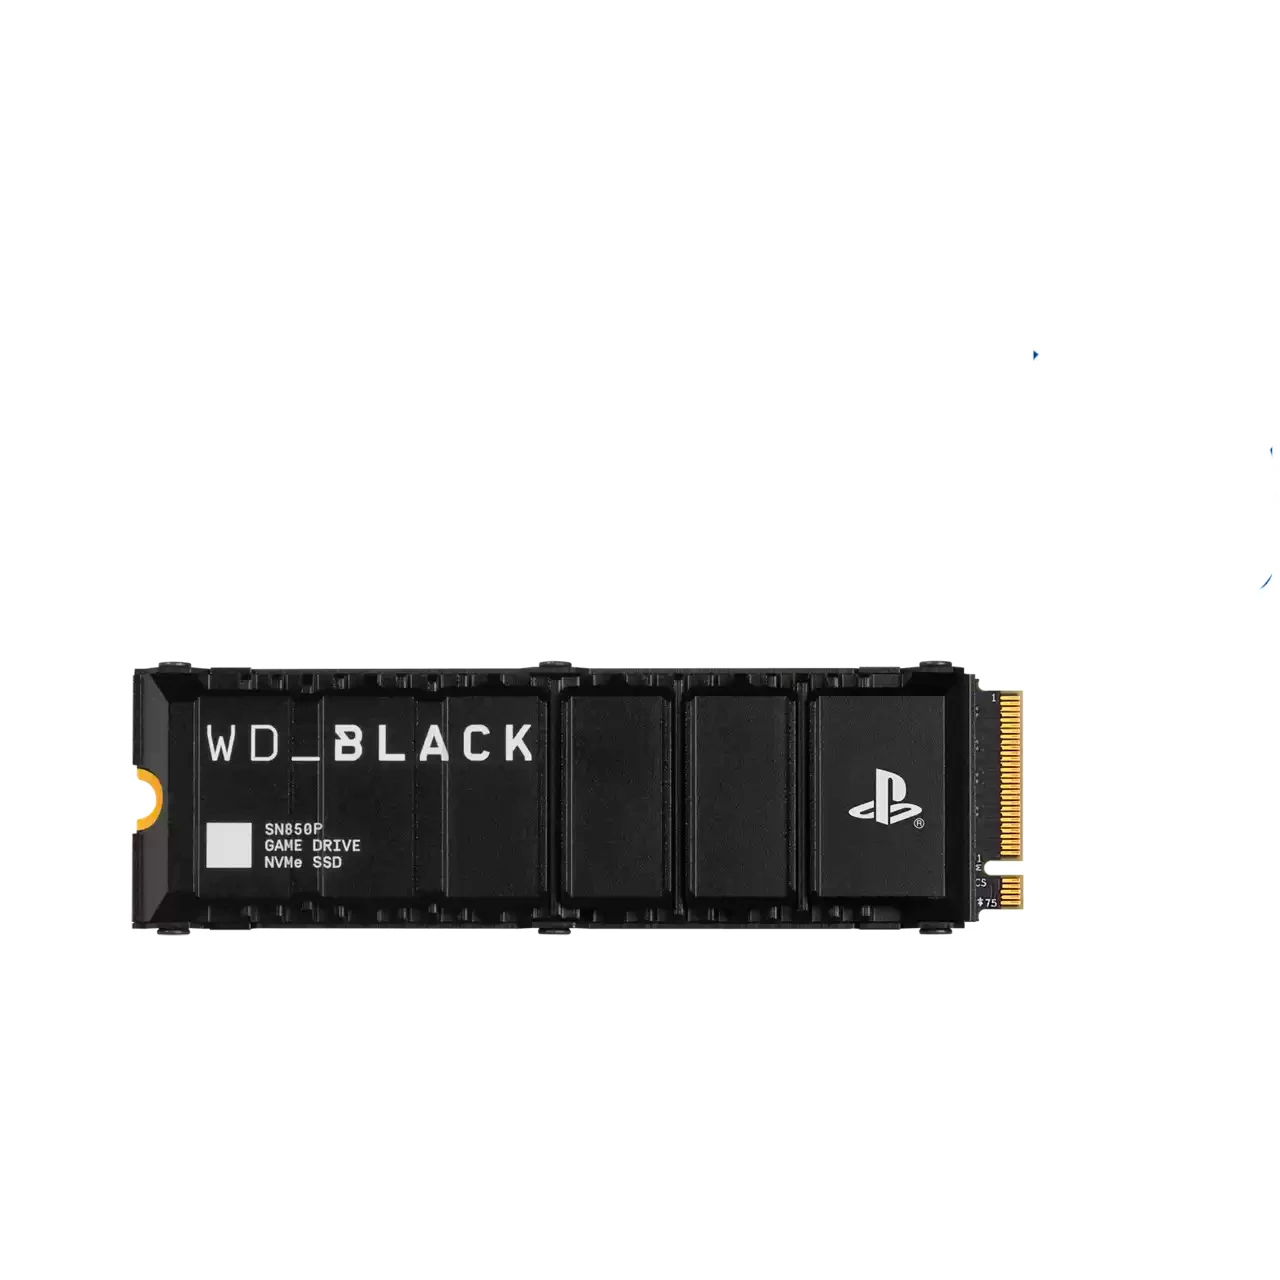 Дополнительная память для PS5 WD_BLACK 4TB SN850P NVMe SSD for PS5 consoles (WDBBYV0040BNC-WRSN)